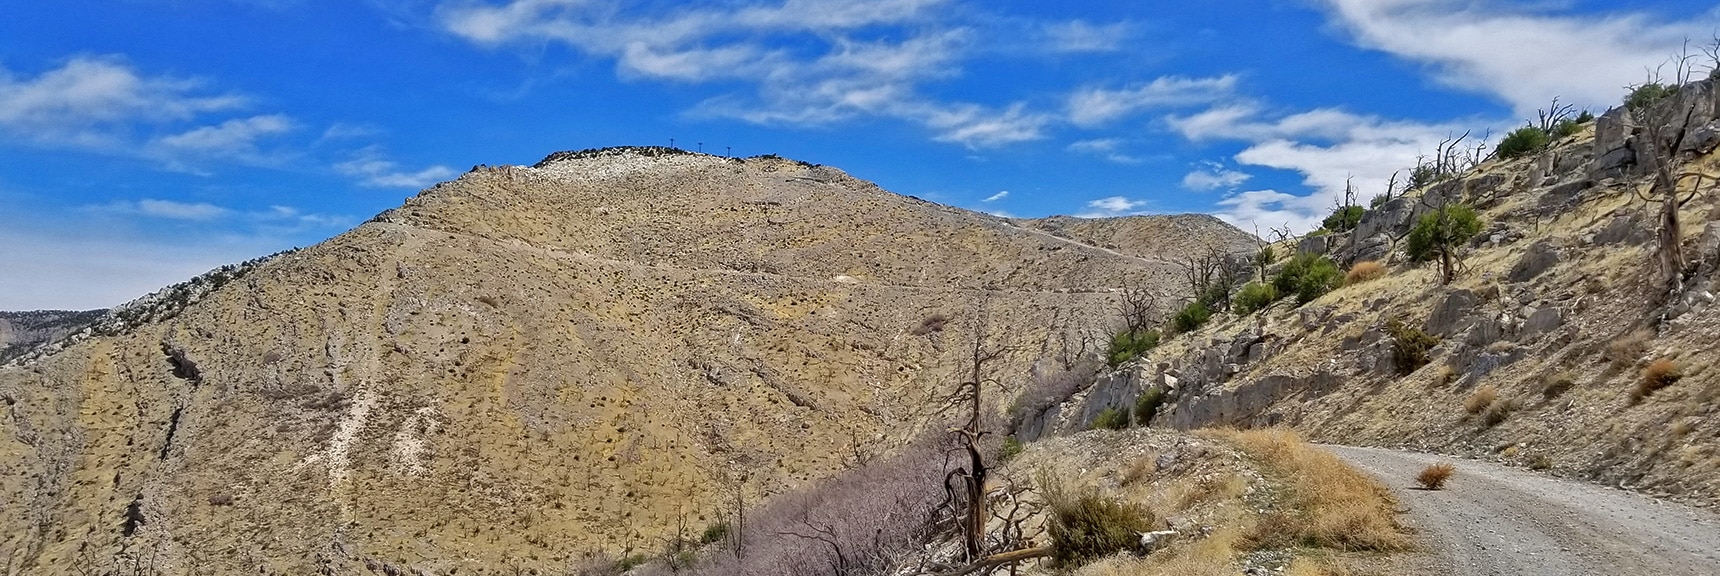 Rounding the Ridge the South Summit Comes into View | Potosi Mountain Spring Mountains Nevada